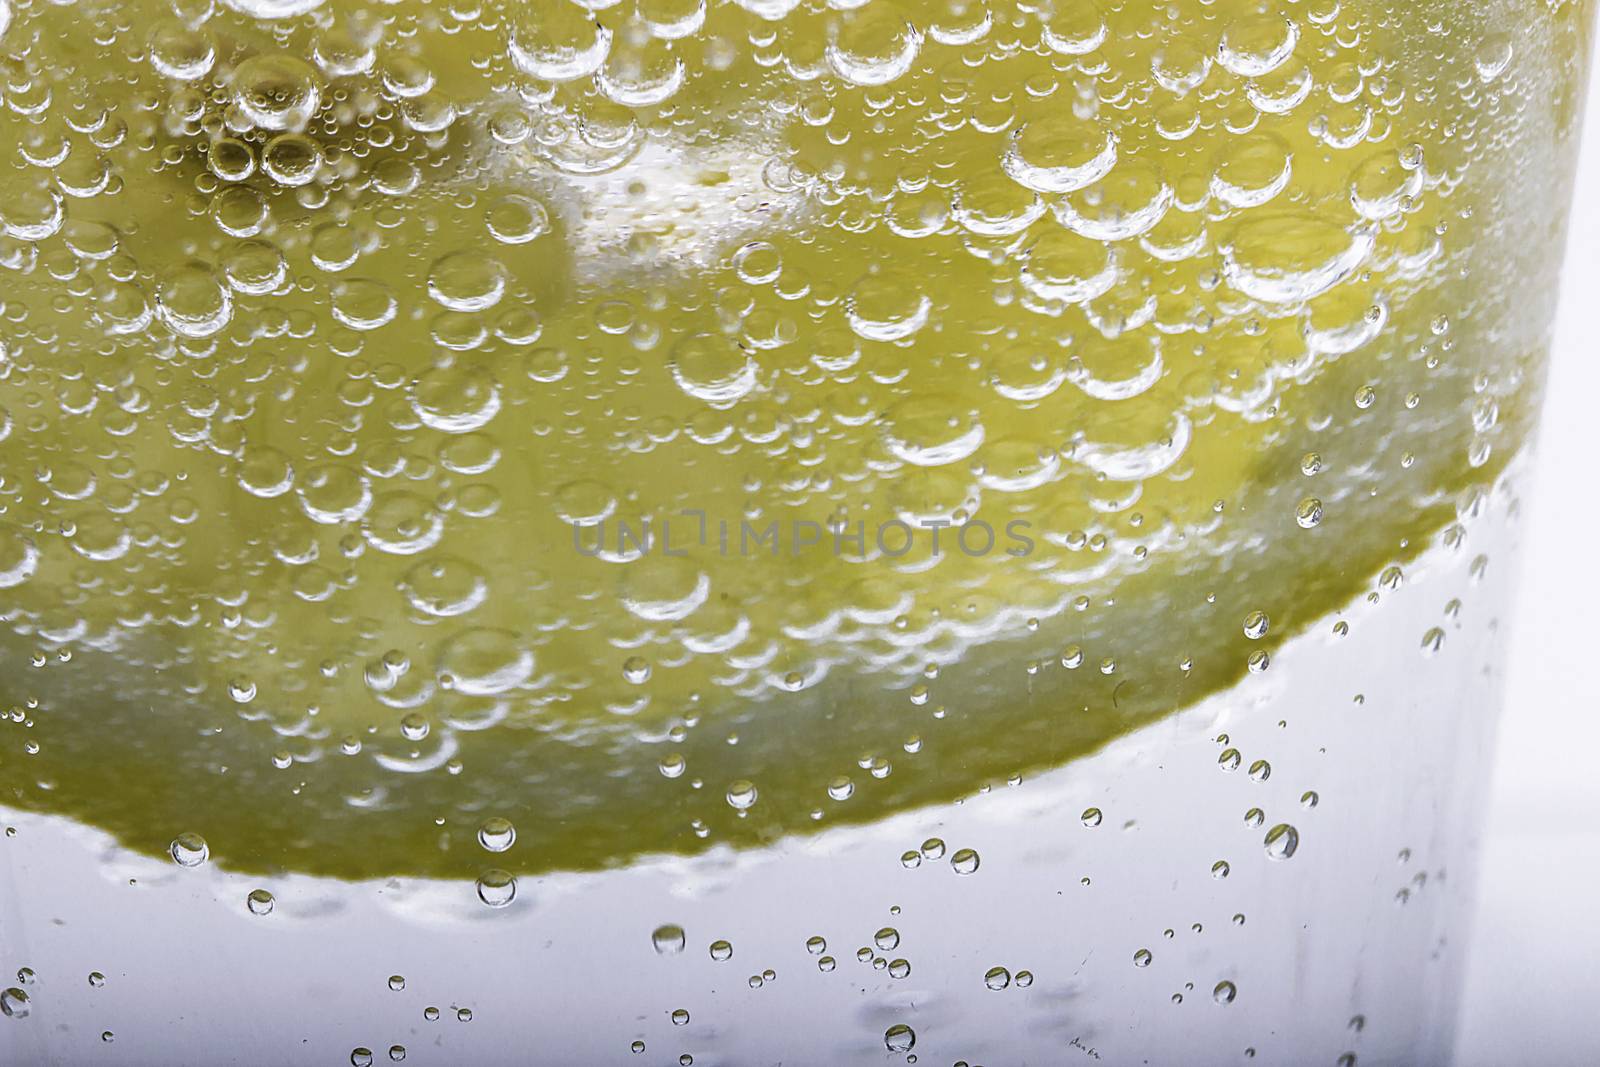 Slice Of Lemon In Mineral Water Bubbles  by gstalker